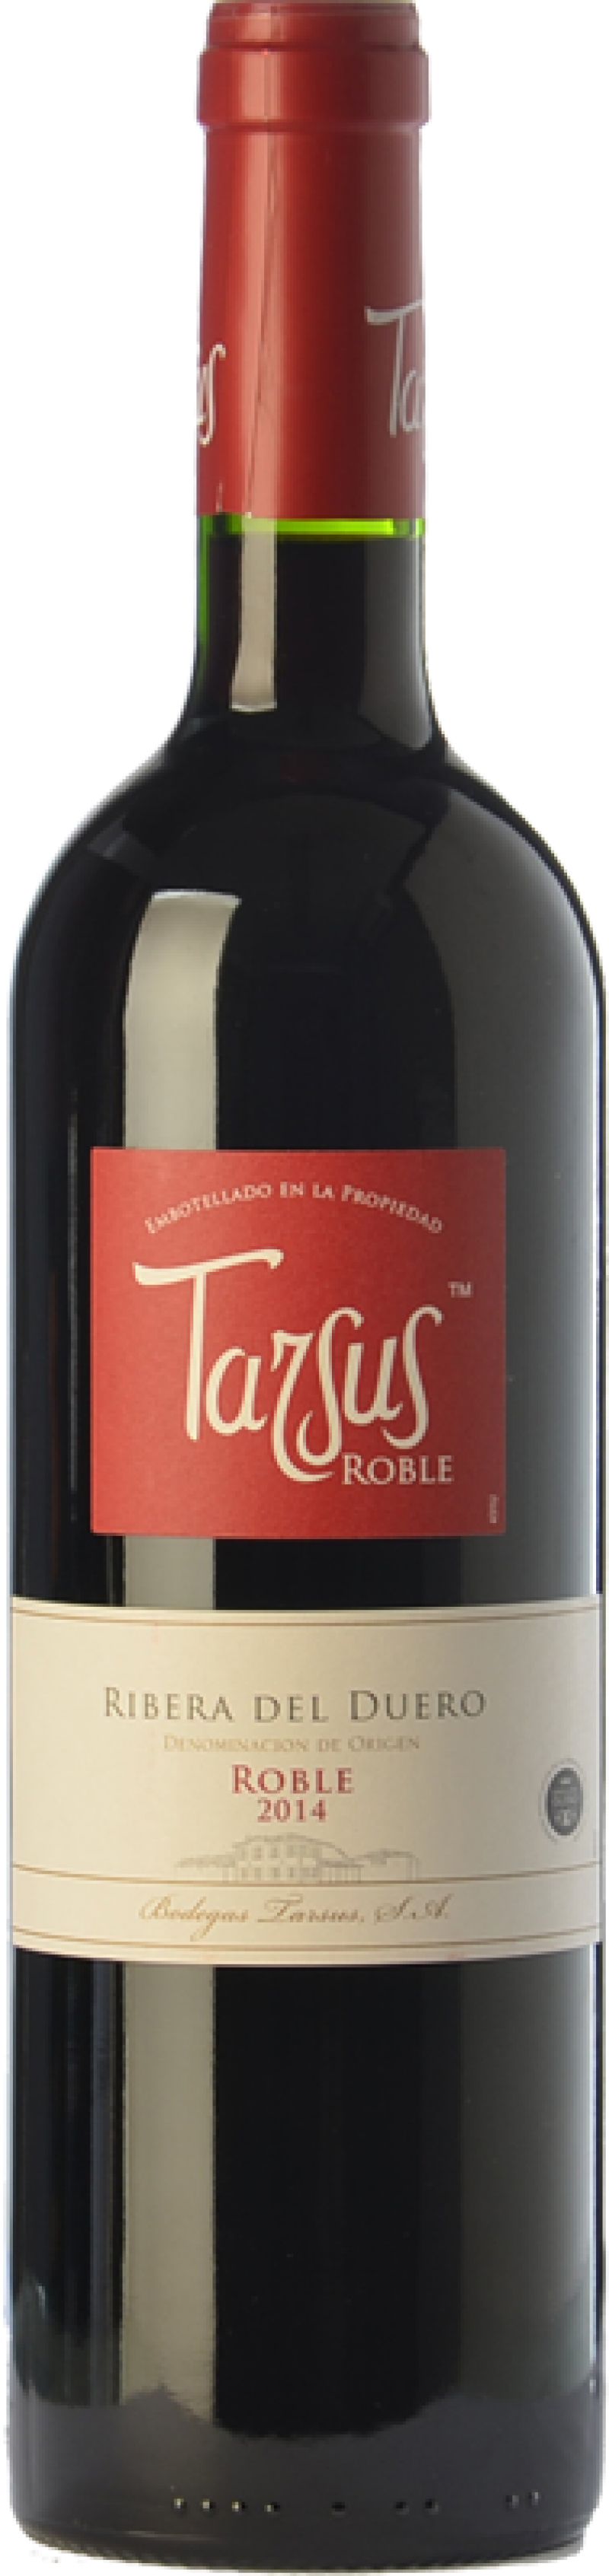 Tarsus Bodegas 2018 Duero Ribera Tarsus en del Vino Tinto Roble -